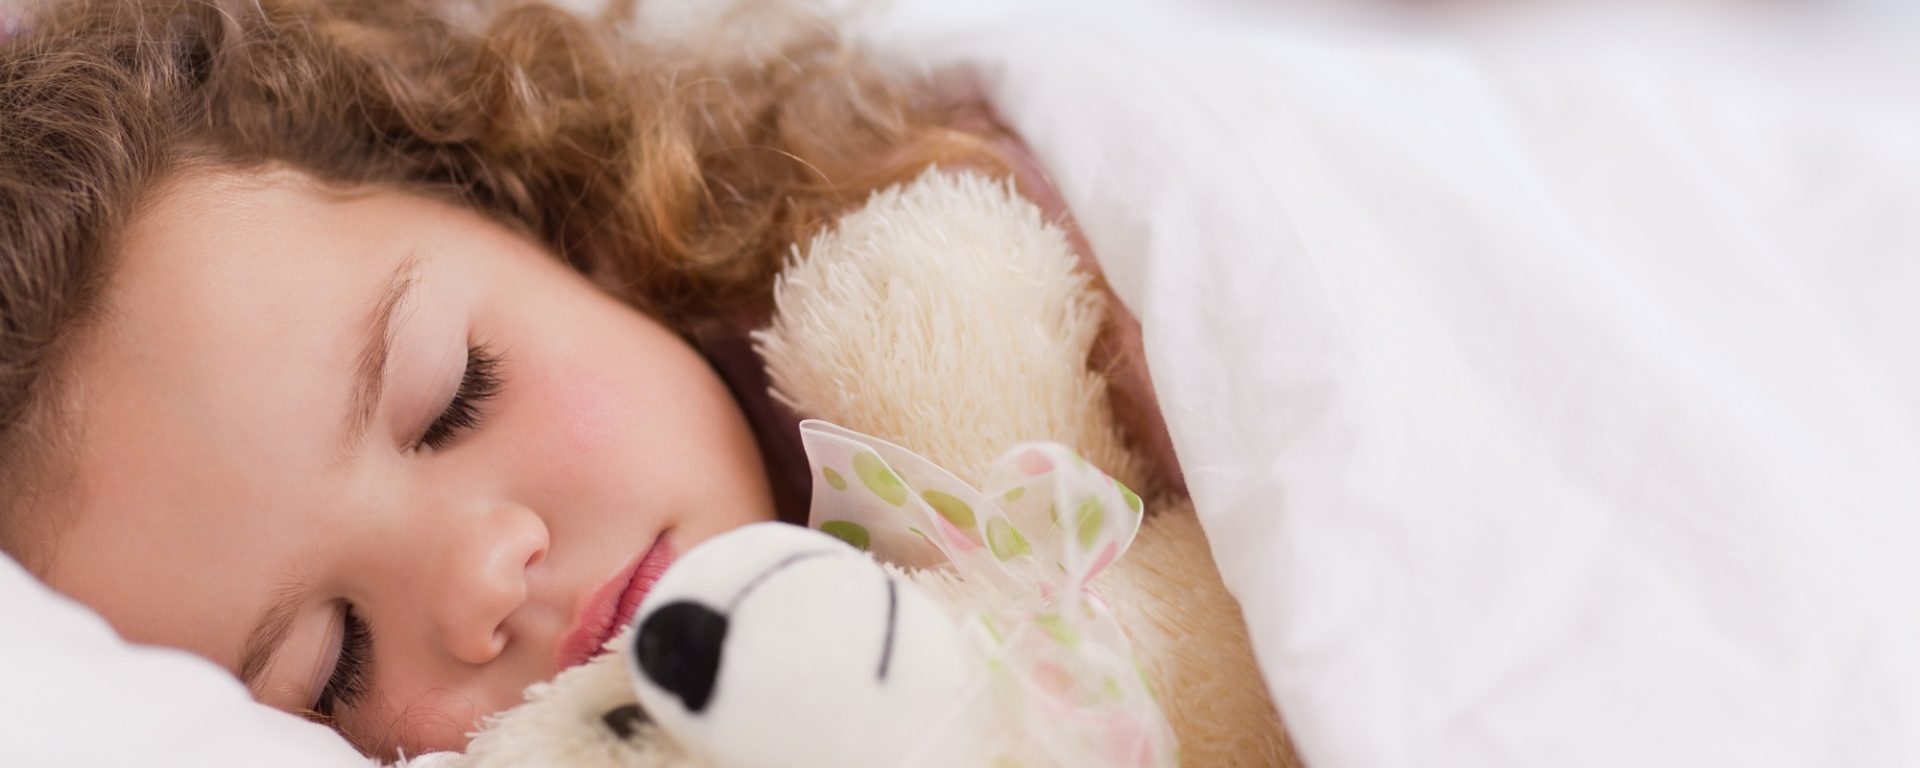 Feste Schlafrituale helfen Kleinkindern einzuschlafen